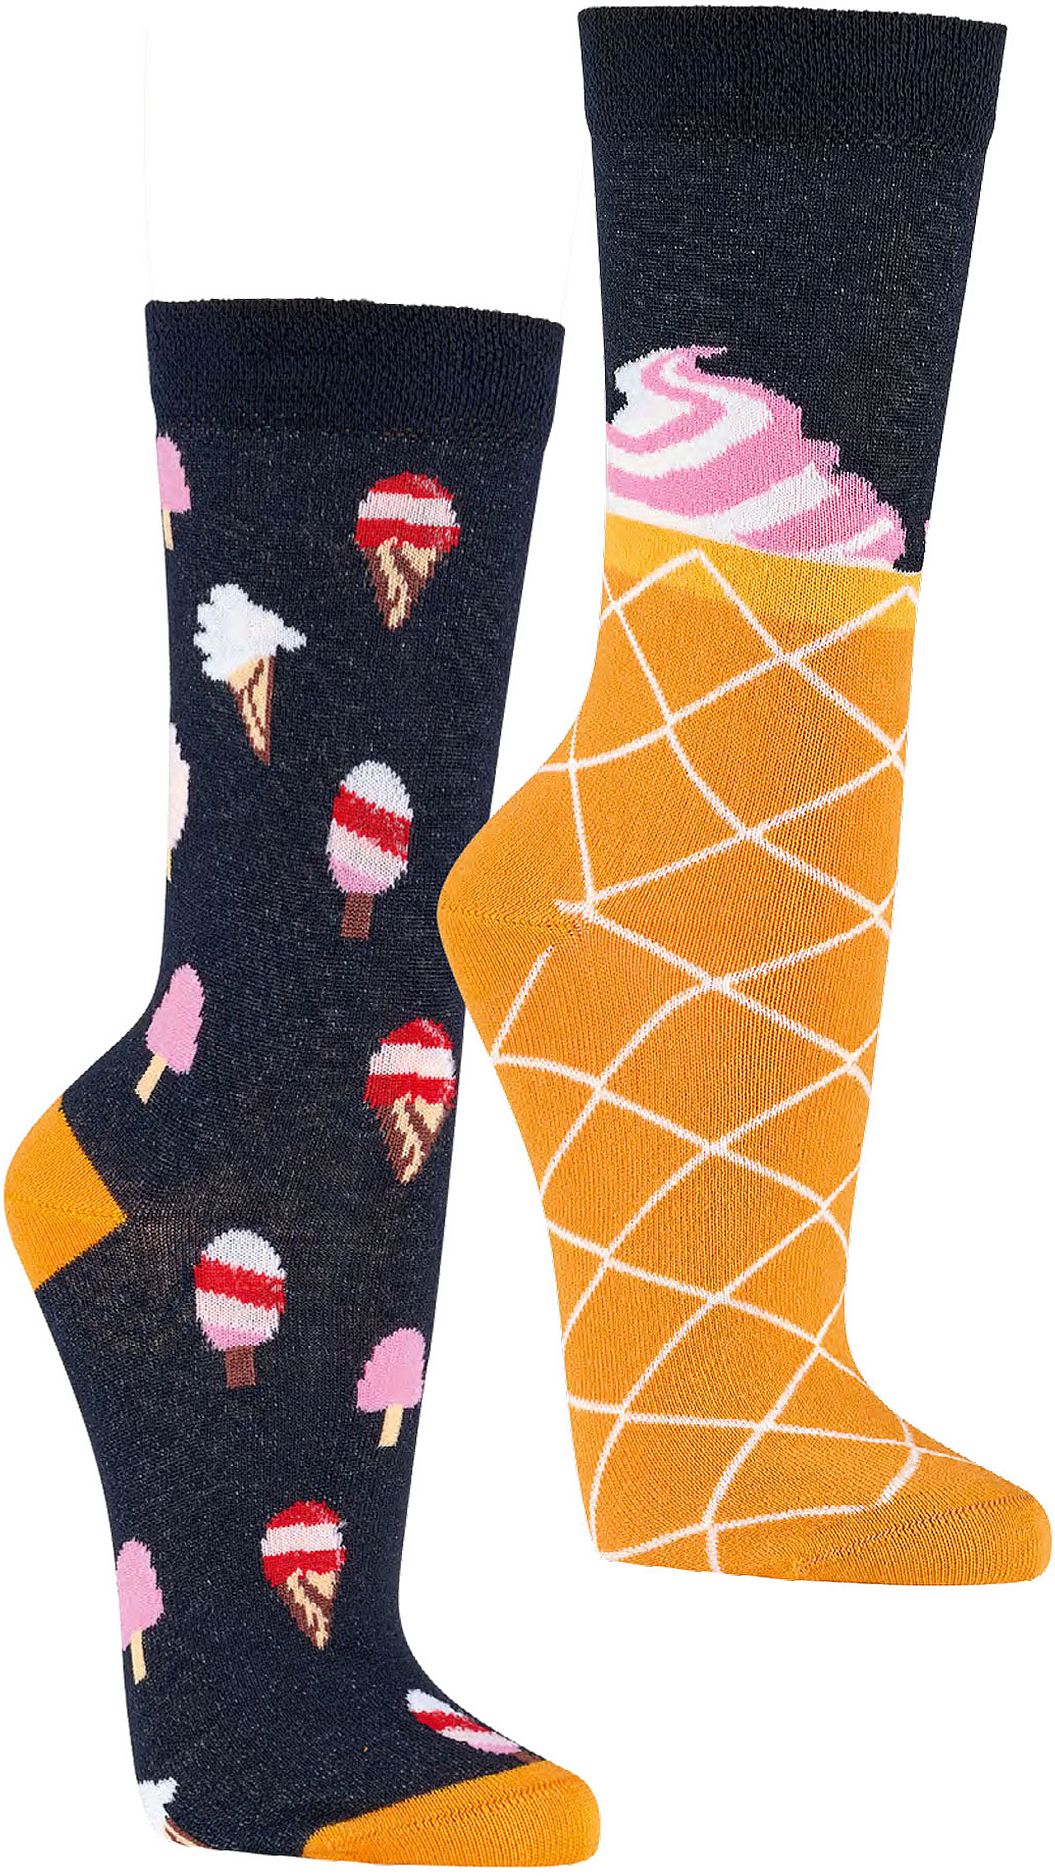 EISCREME Witzige Socken als Geschenkidee oder zum Selbertragen 2er- Bündel 